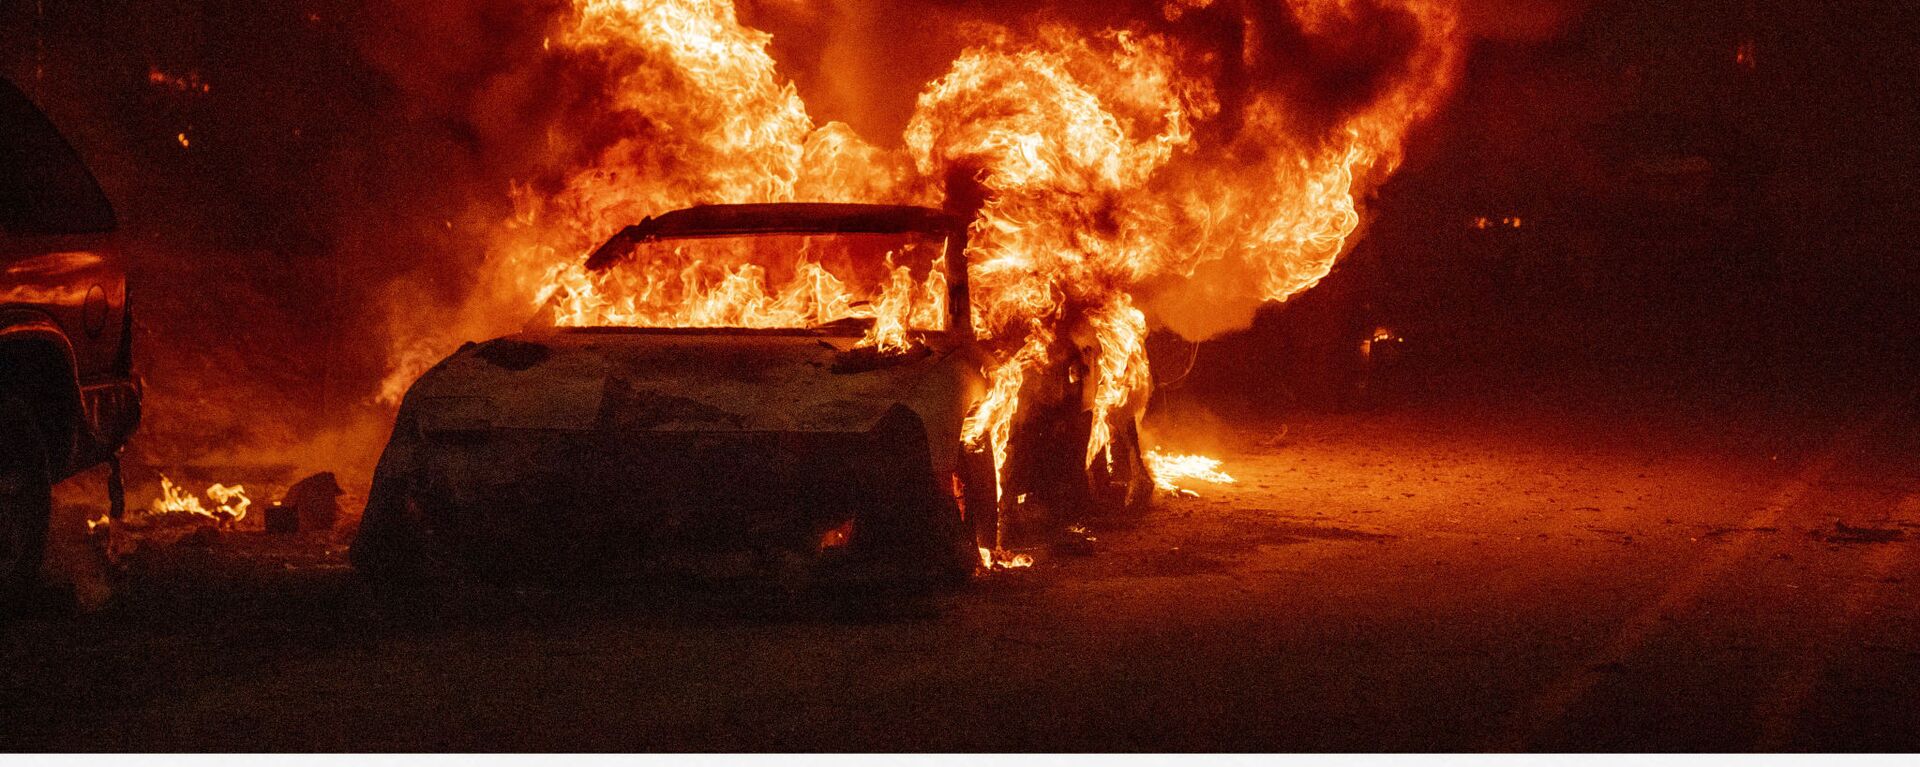 Взрыв автомобиля во время пожара Дикси в районе Индиан-Фолс, США - Sputnik Mundo, 1920, 09.08.2021